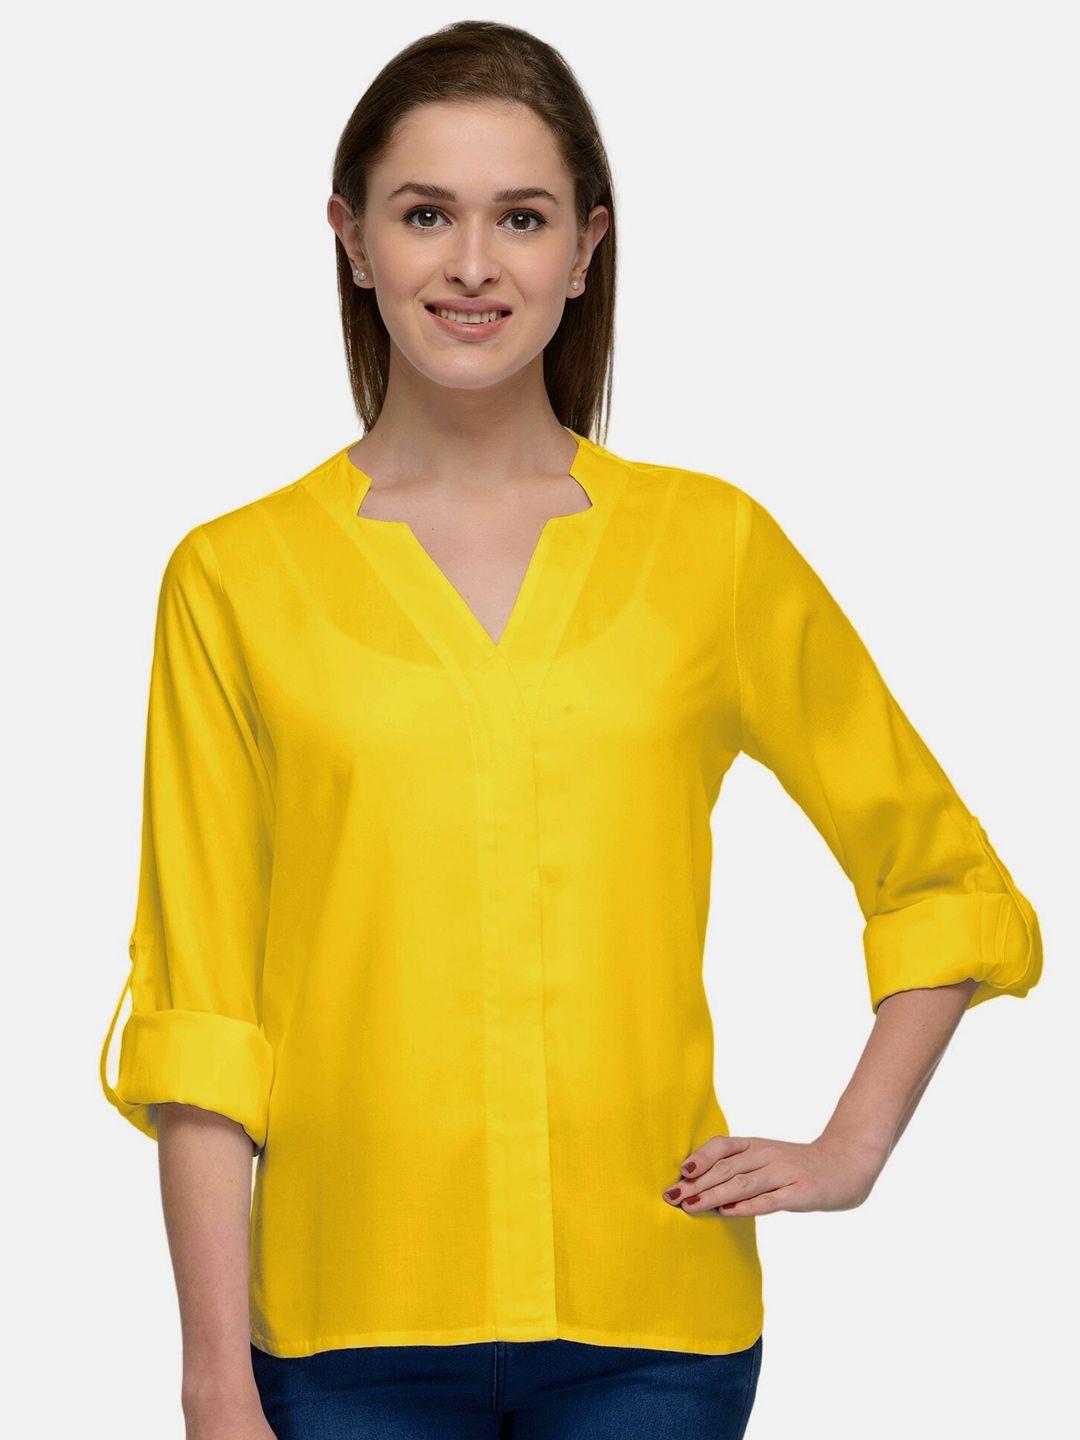 patrorna women mustard yellow comfort casual shirt